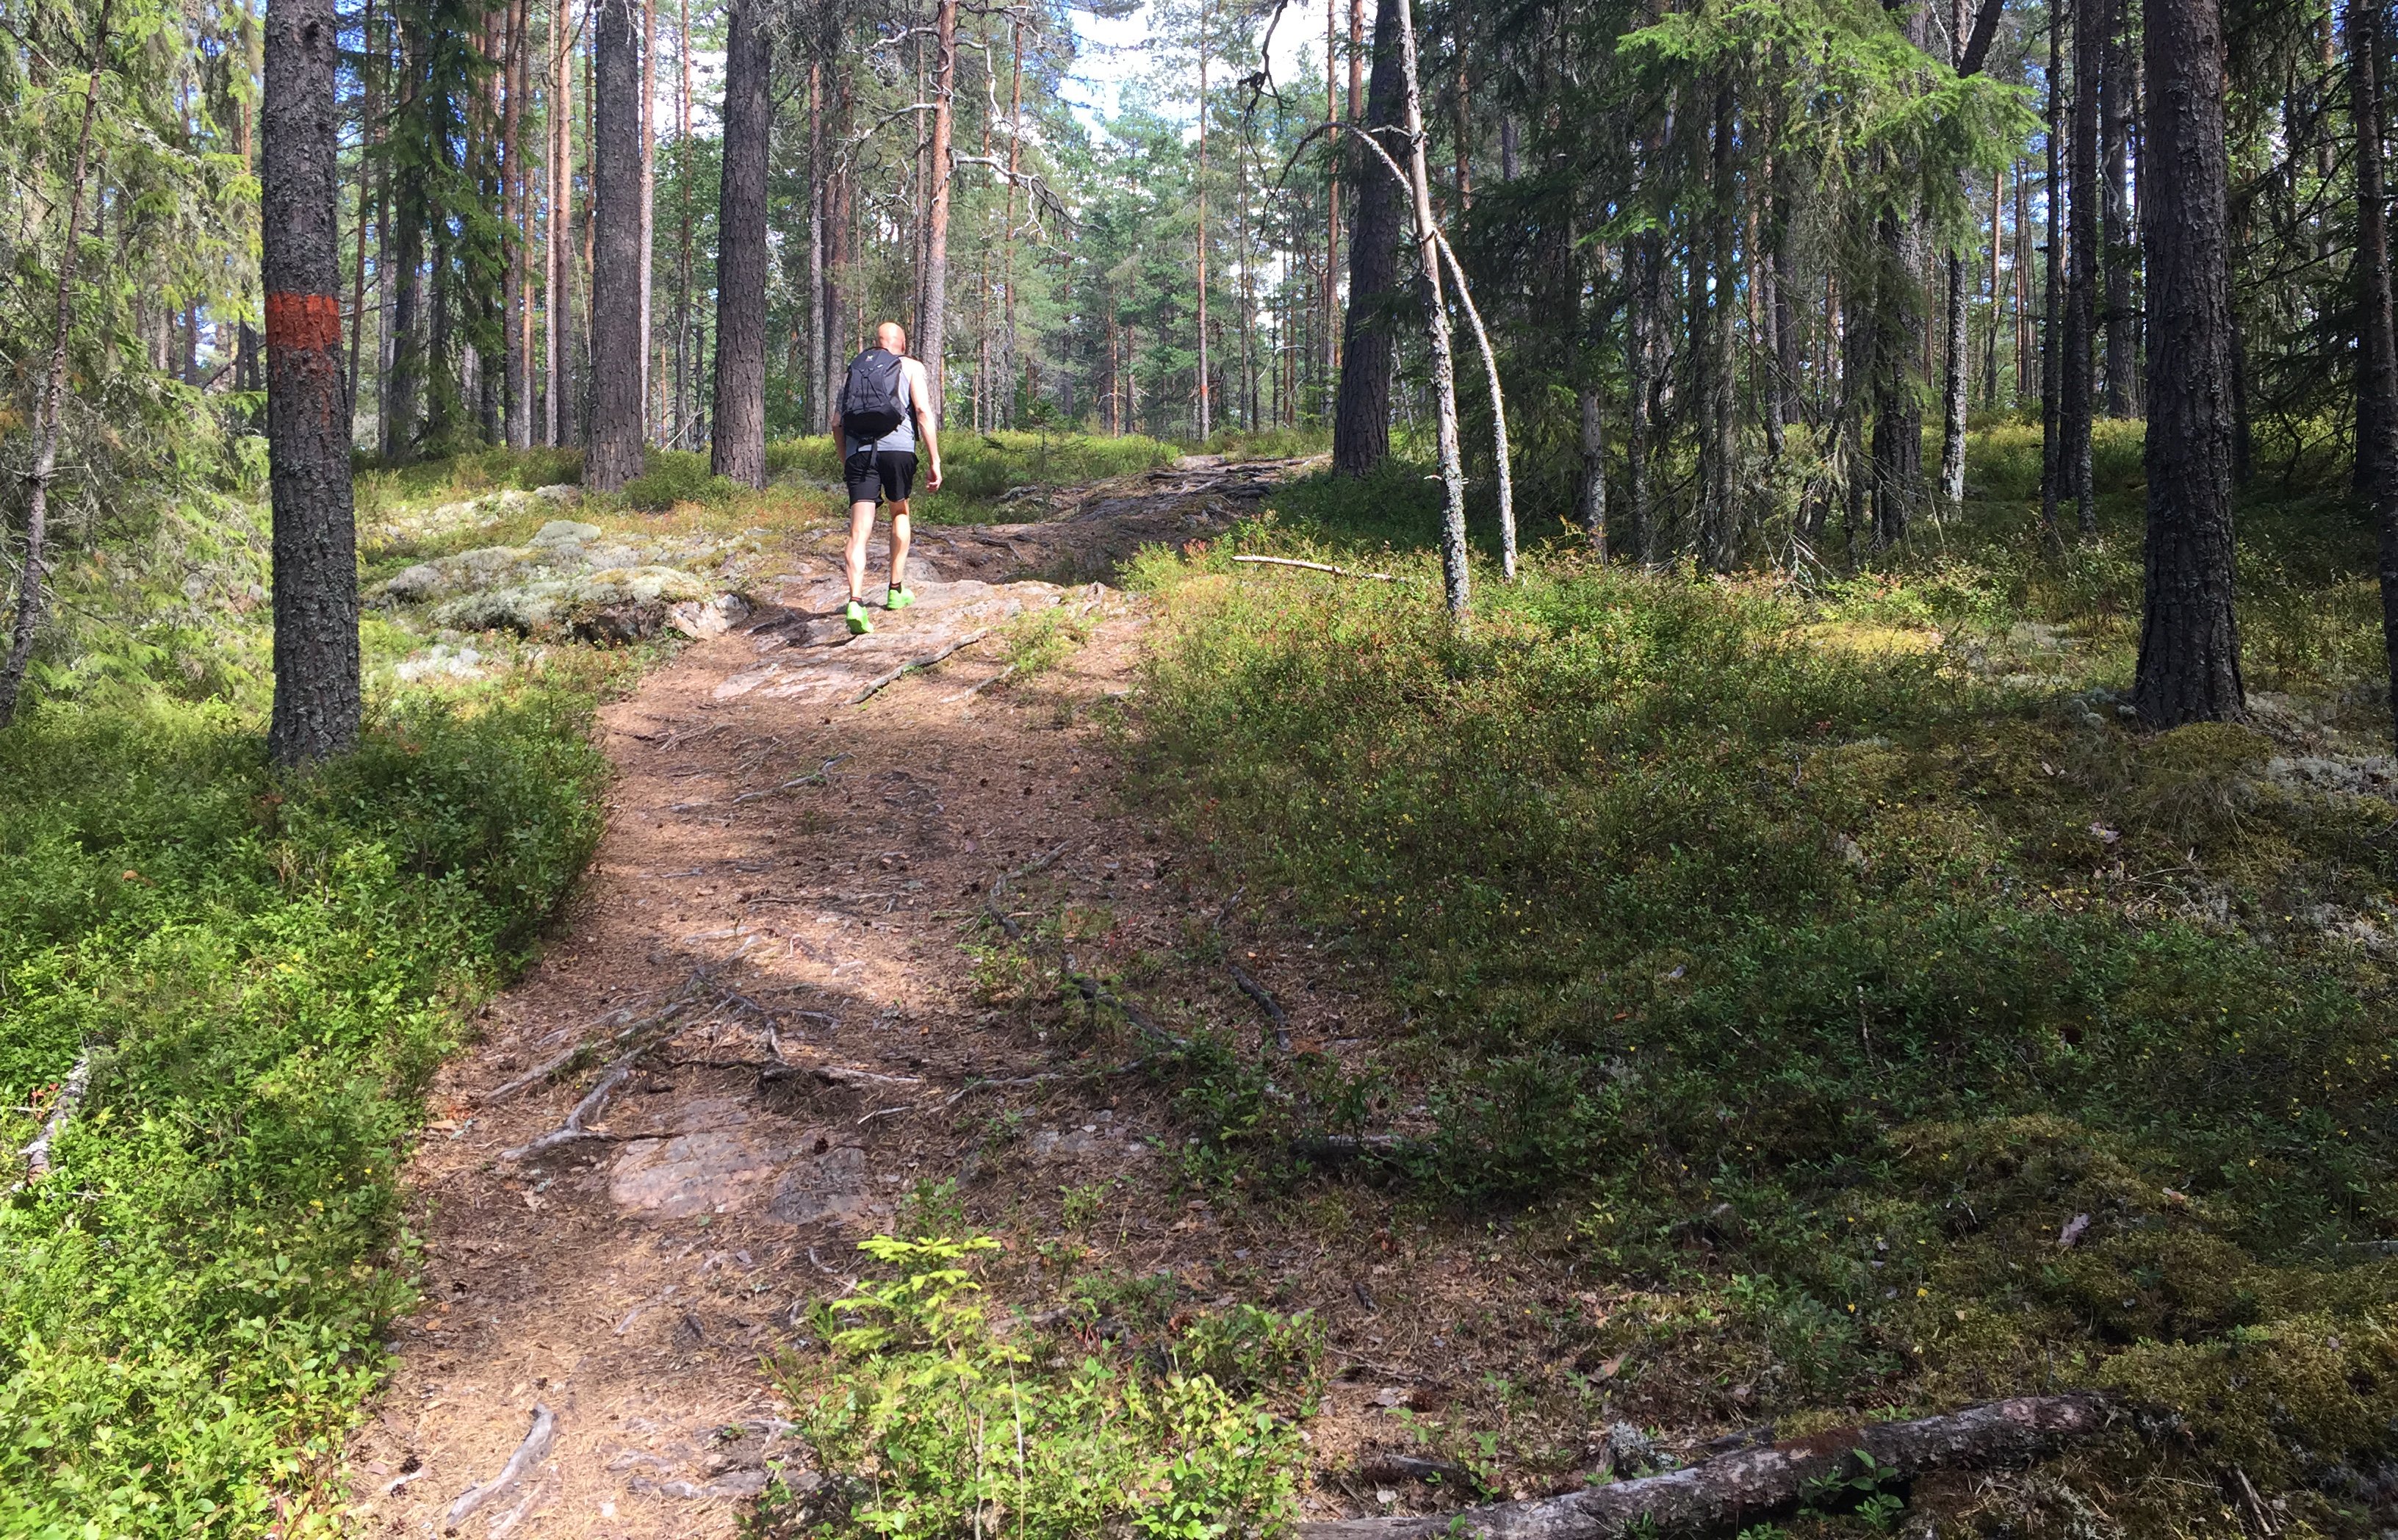 En person med ryggsäck vandrar på en stig i skogen.